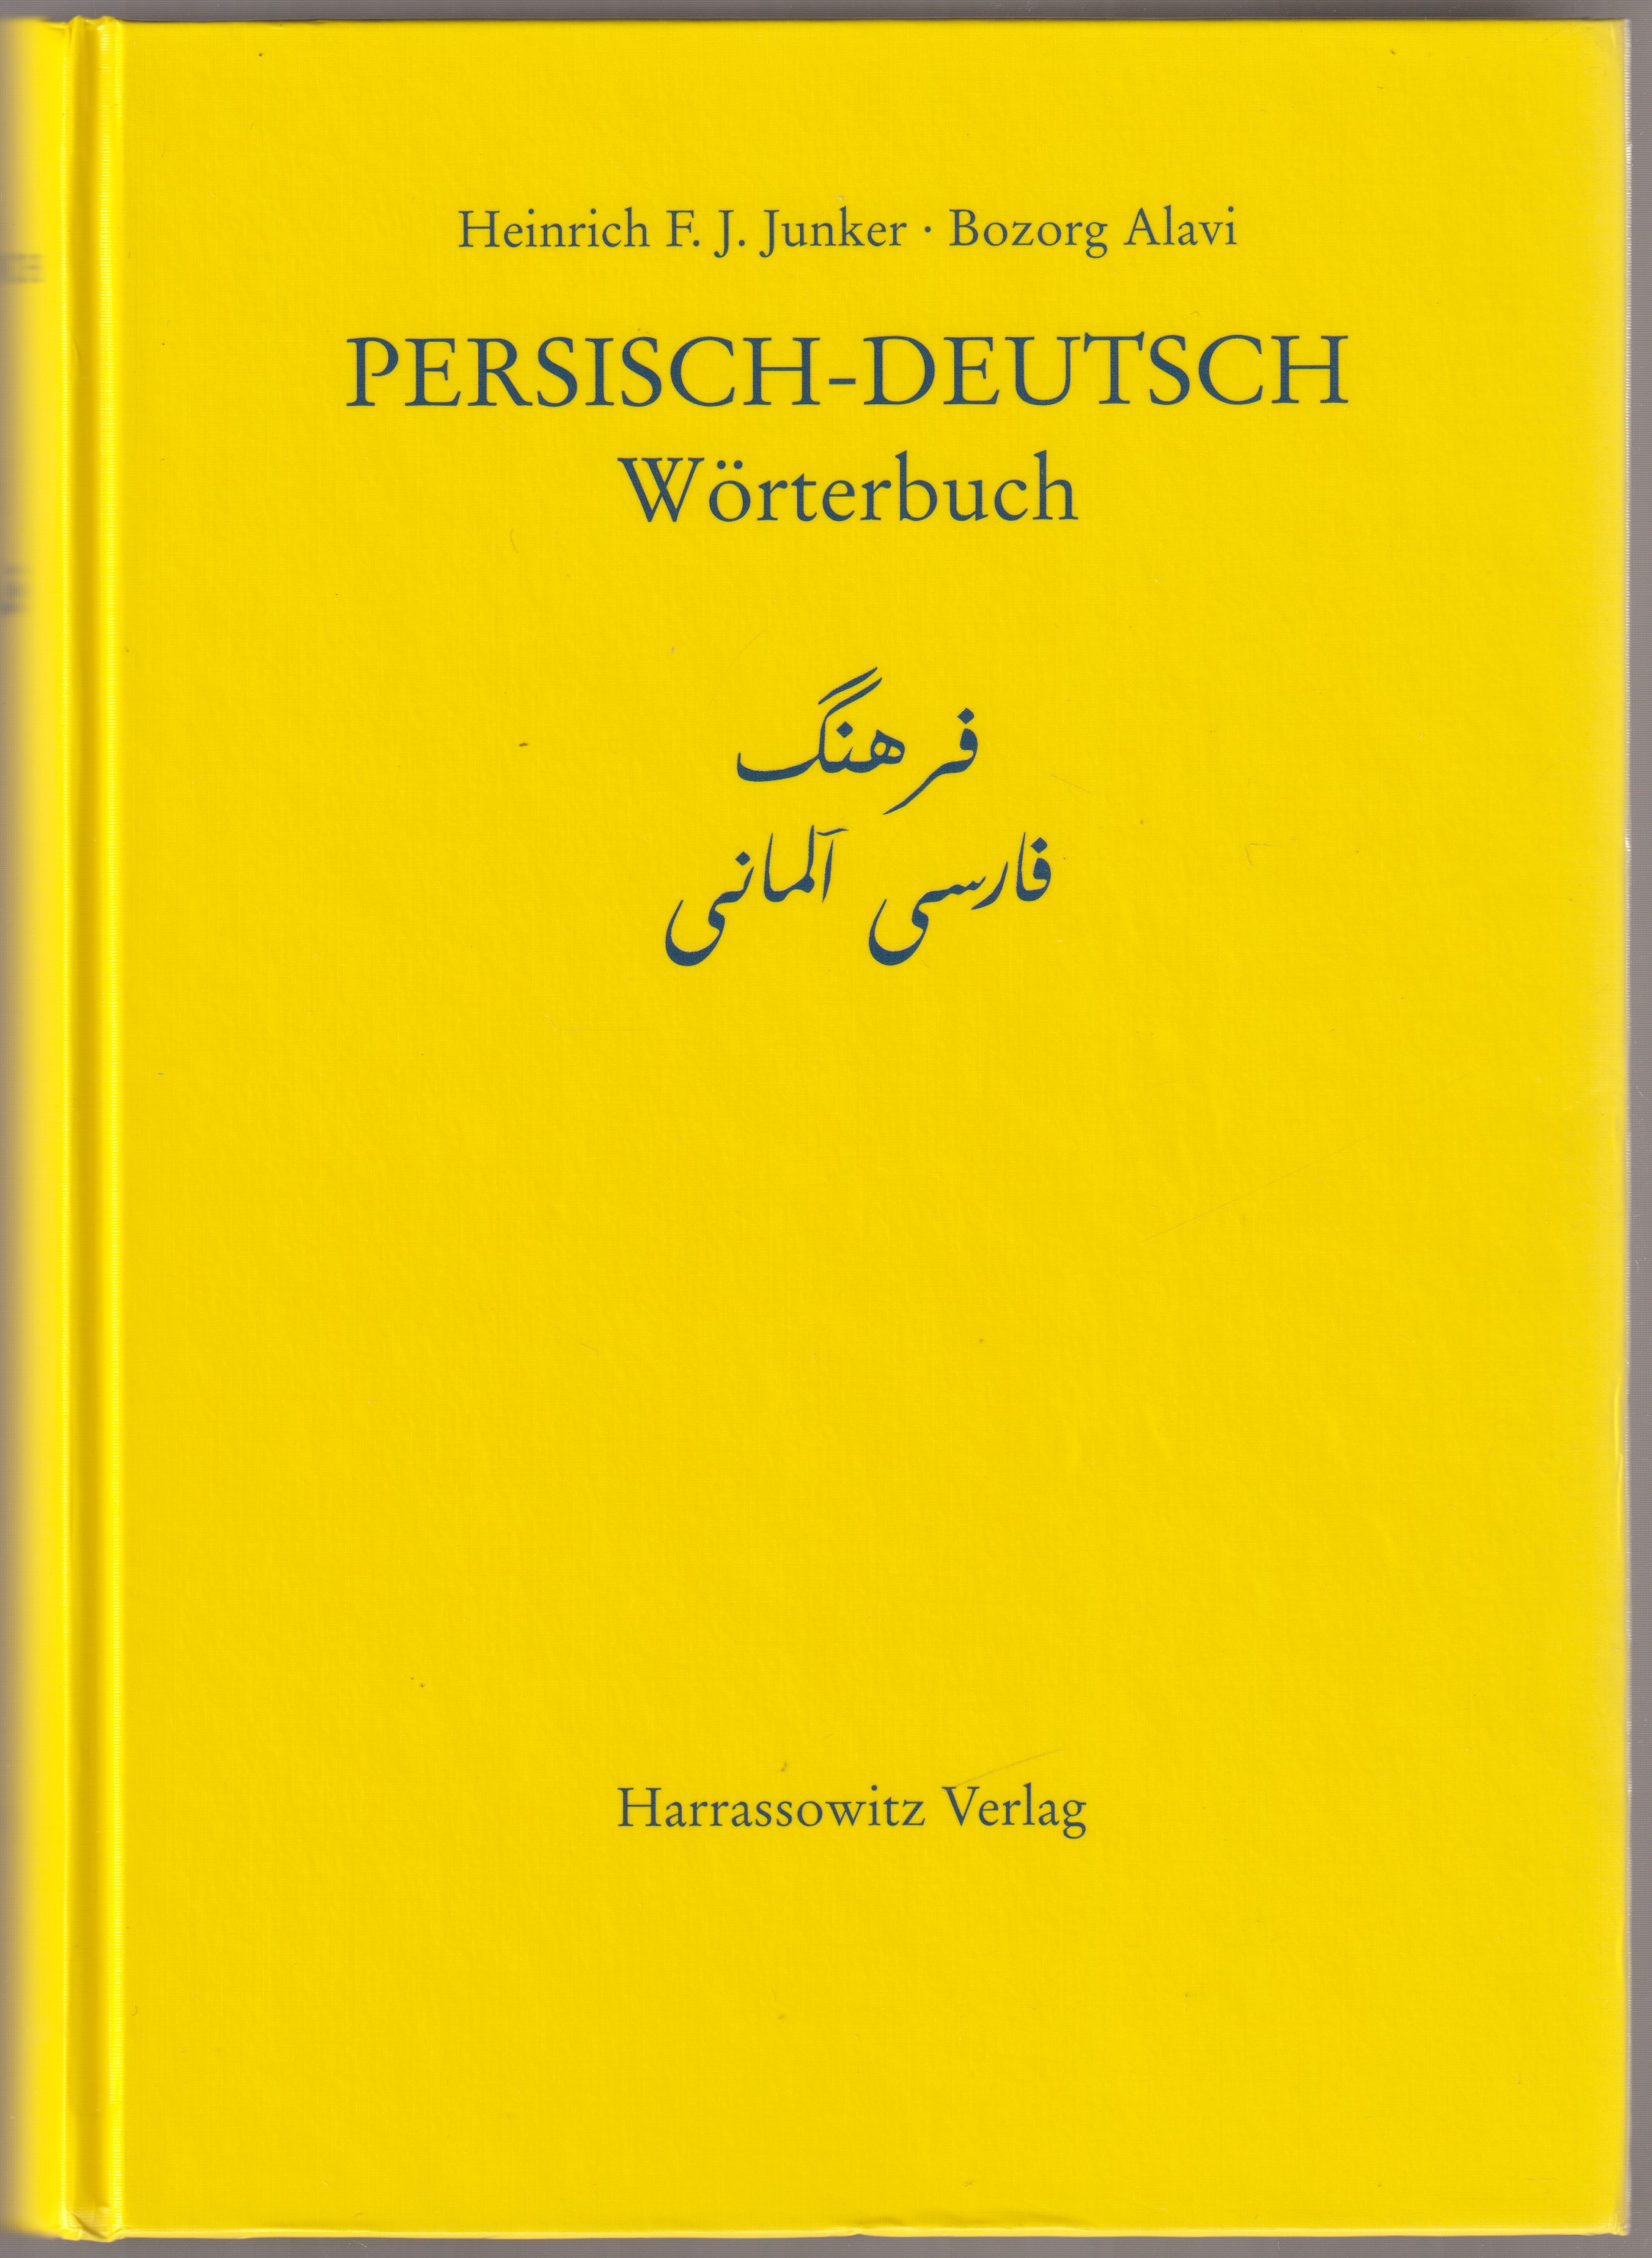 Persisch-Deutsch Worterbuch.